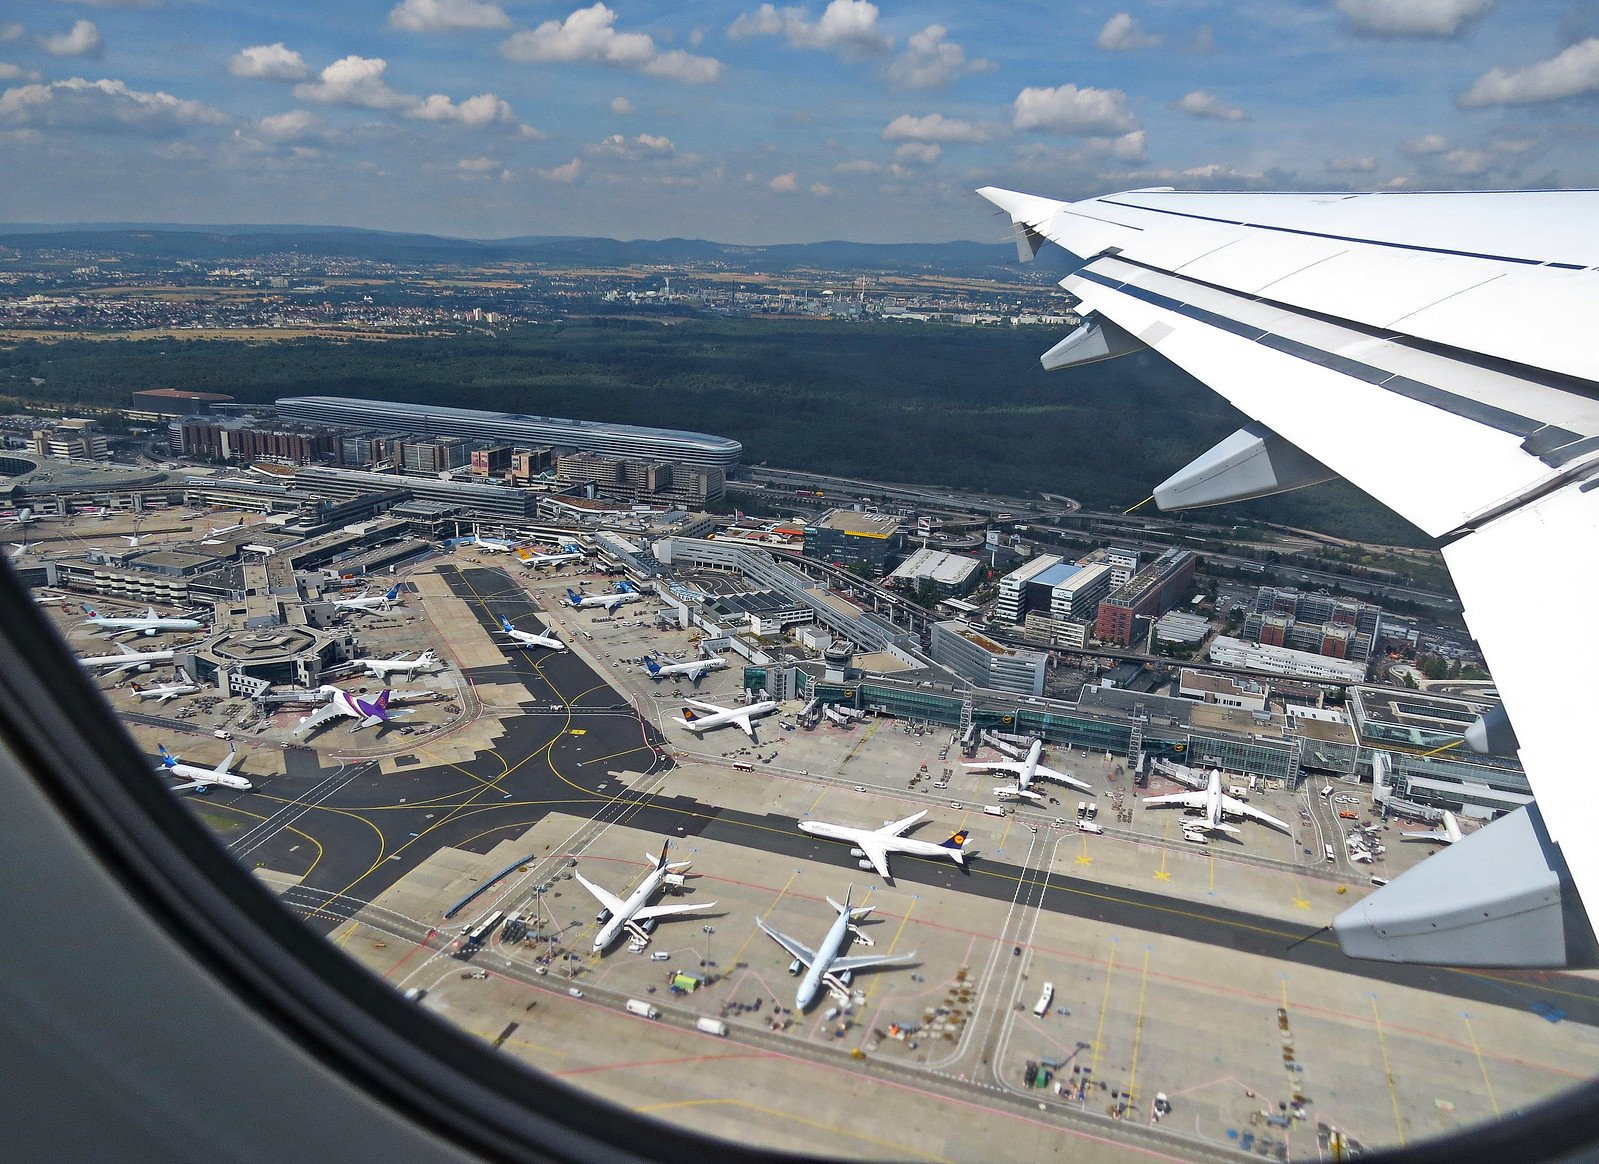 Франкфурт на майне аэропорт фото